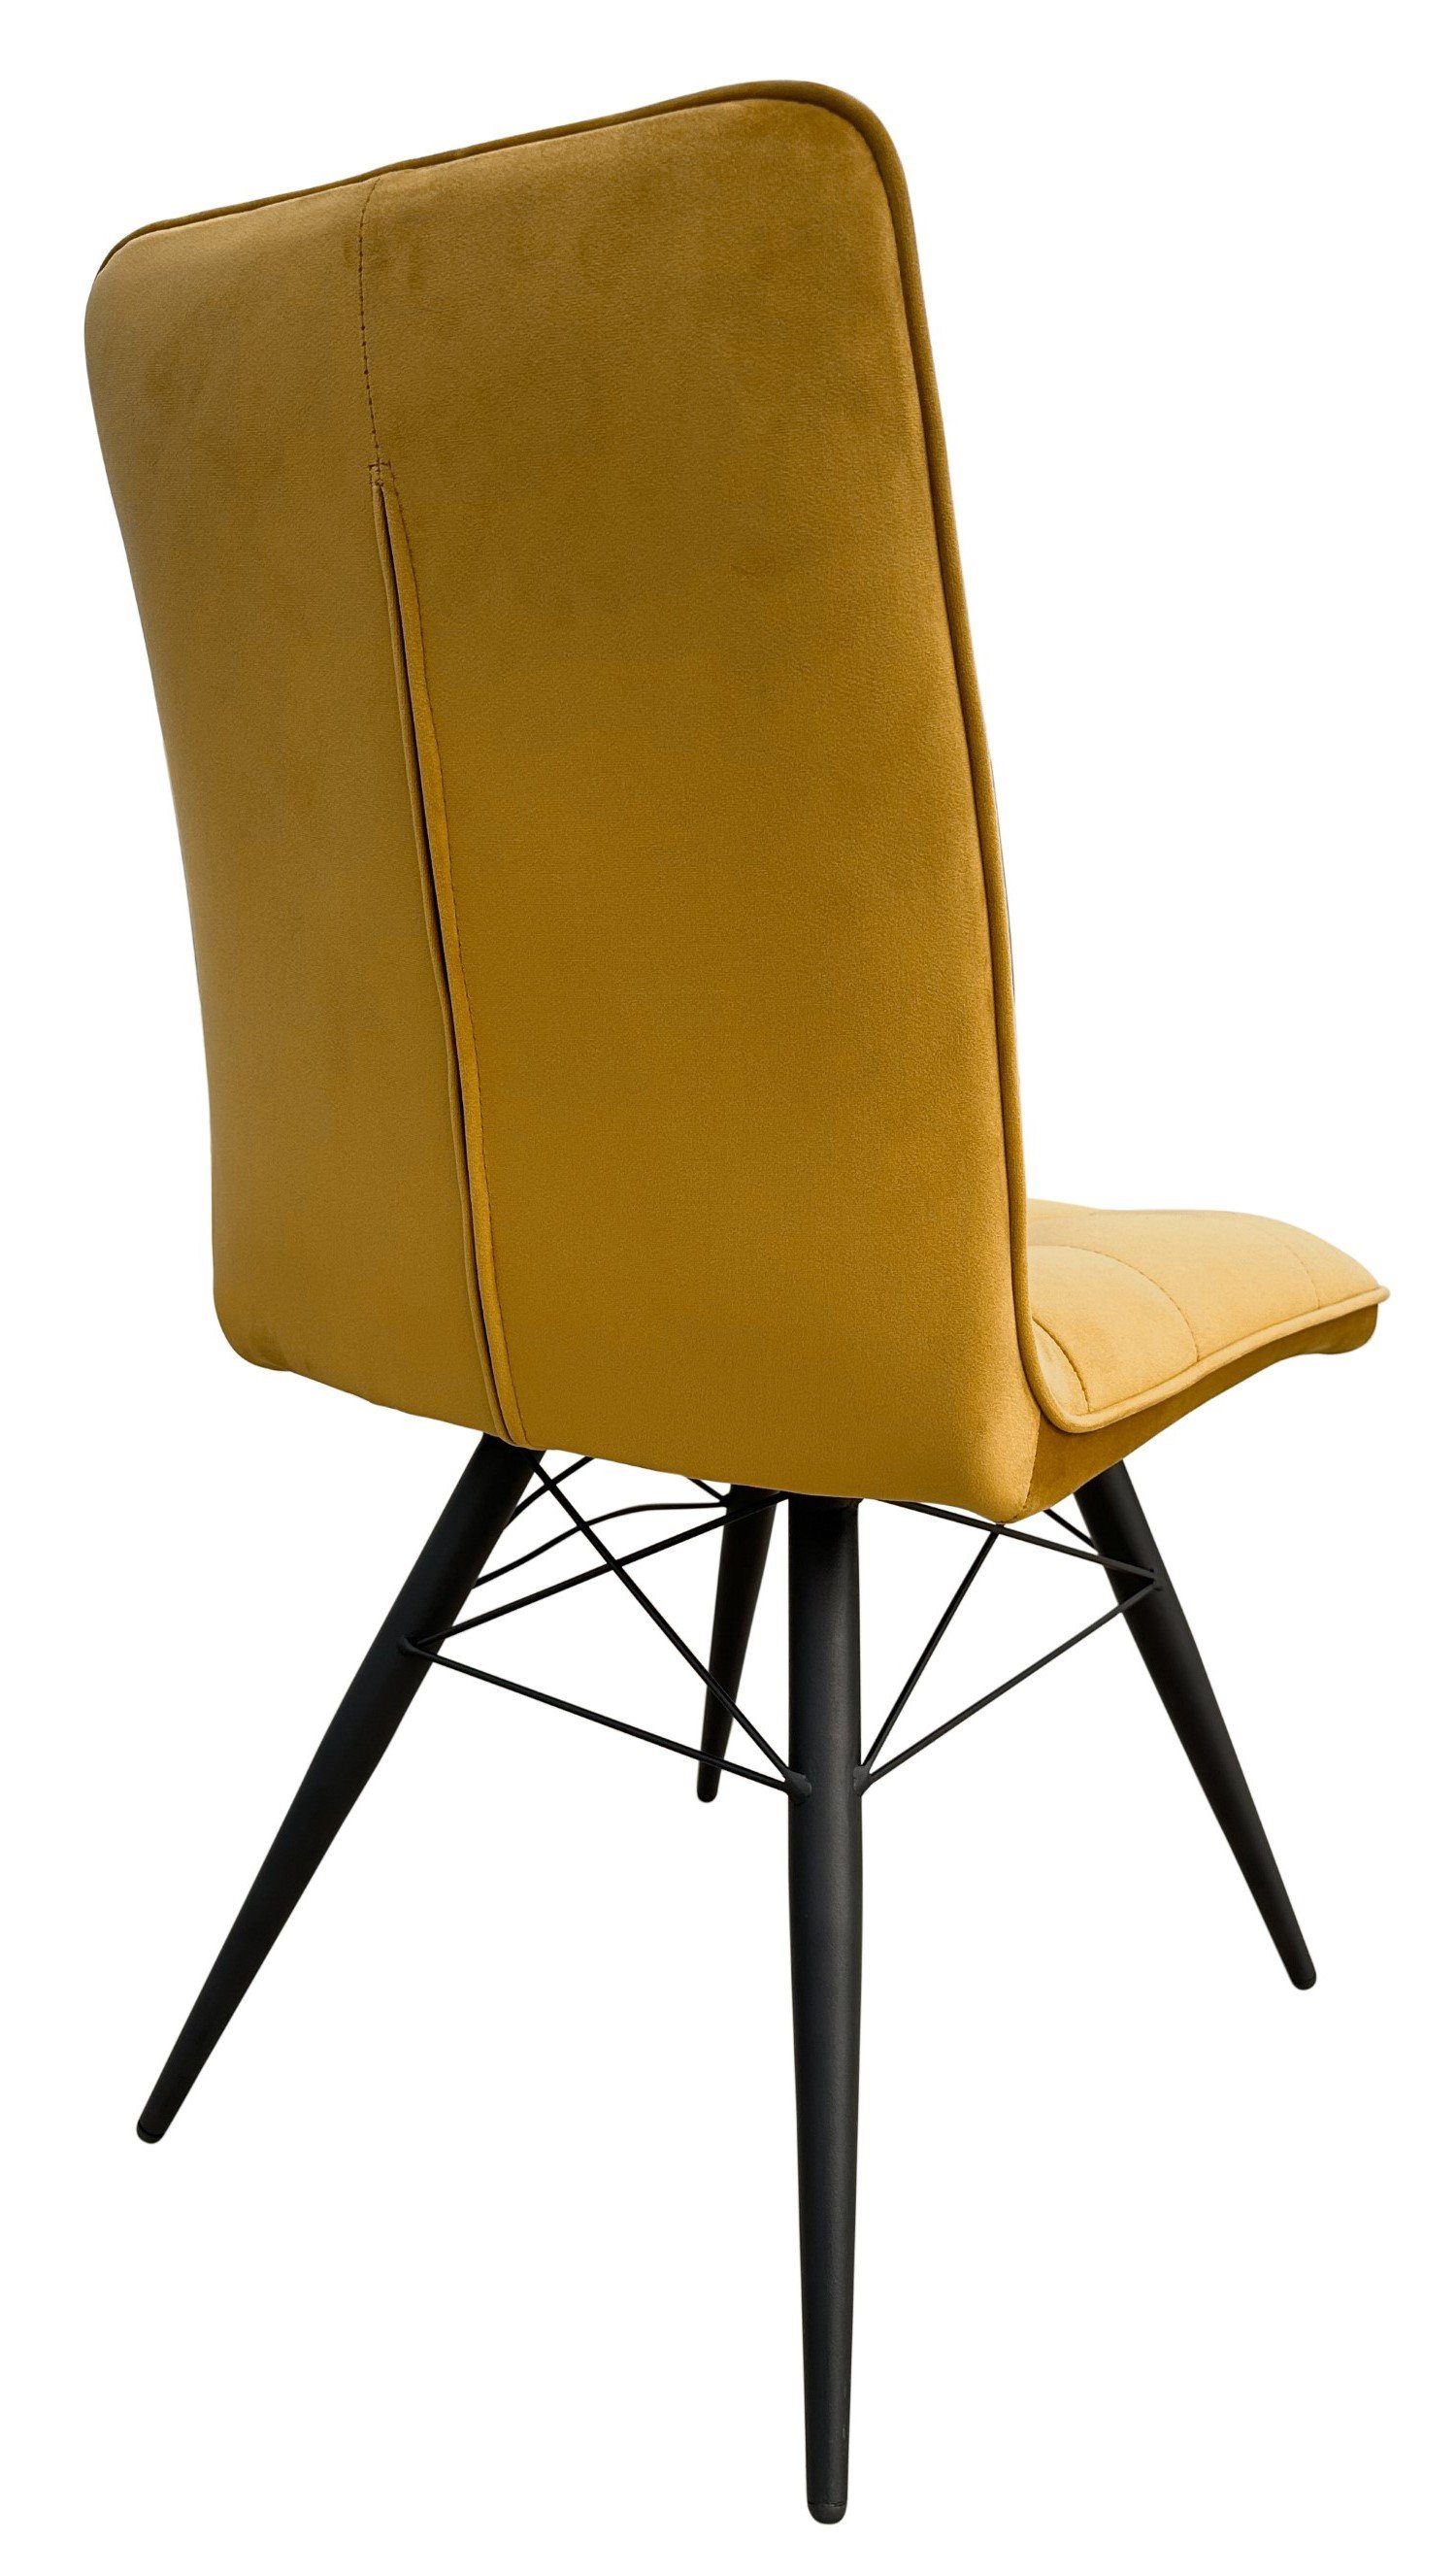 St), saharagelb 4 living - Stuhl weicher Samtbezug Samt - (Set, bene - Metall-Gestell Rückenlehne gepolstert - Vicenza - hohe